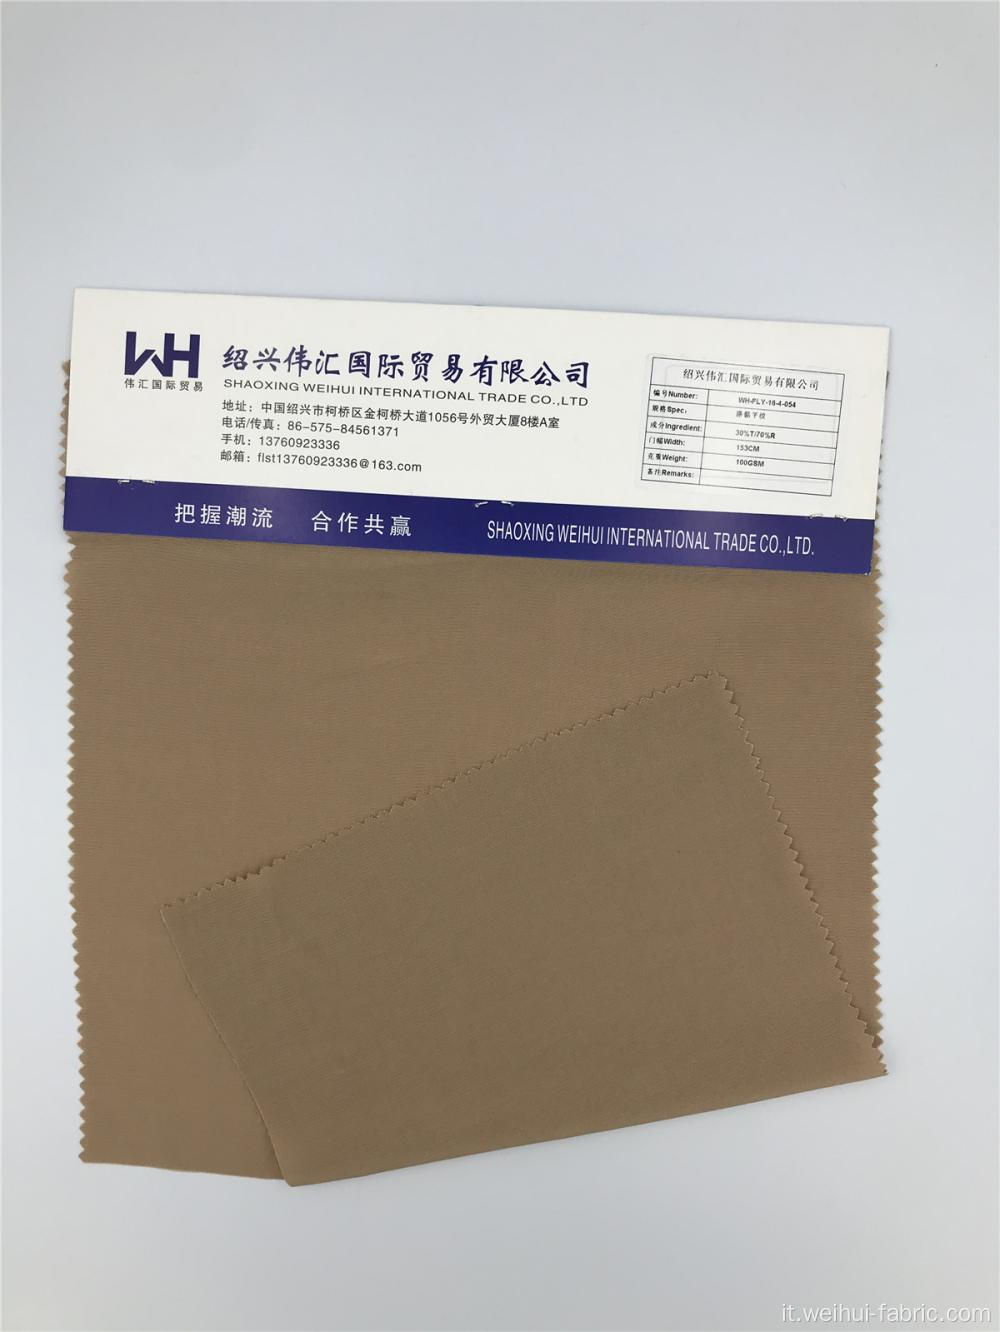 Tessuti di alta qualità in tessuto 30T / 70R tinta unita marrone